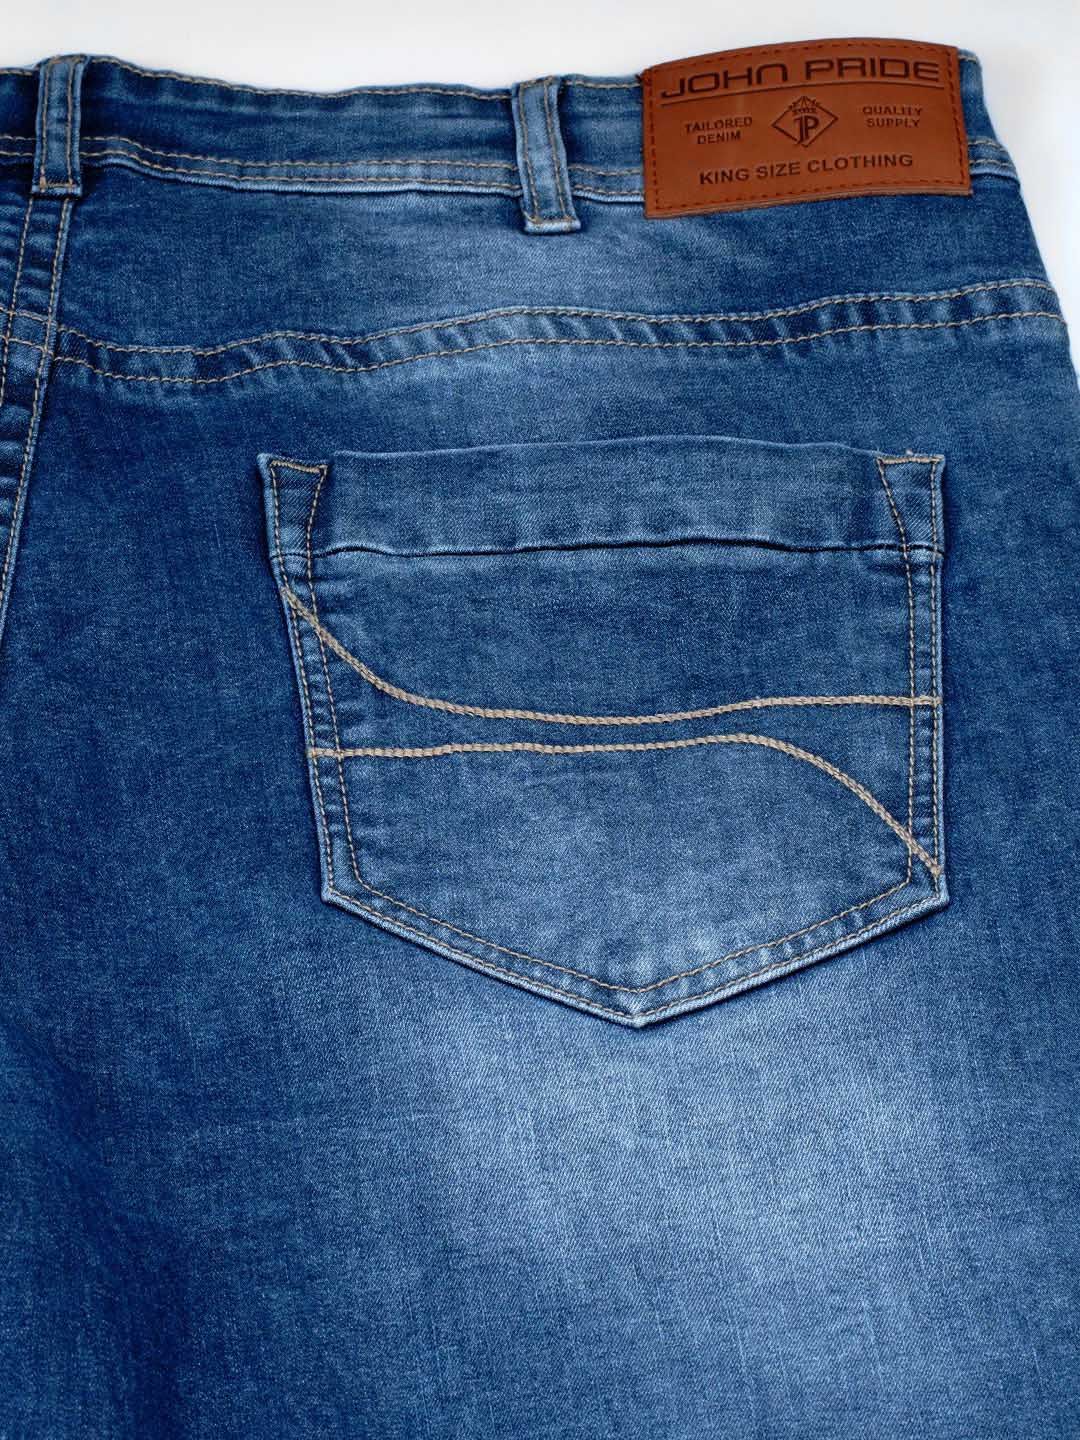 bottomwear/jeans/JPJ12122/jpj12122-5.jpg